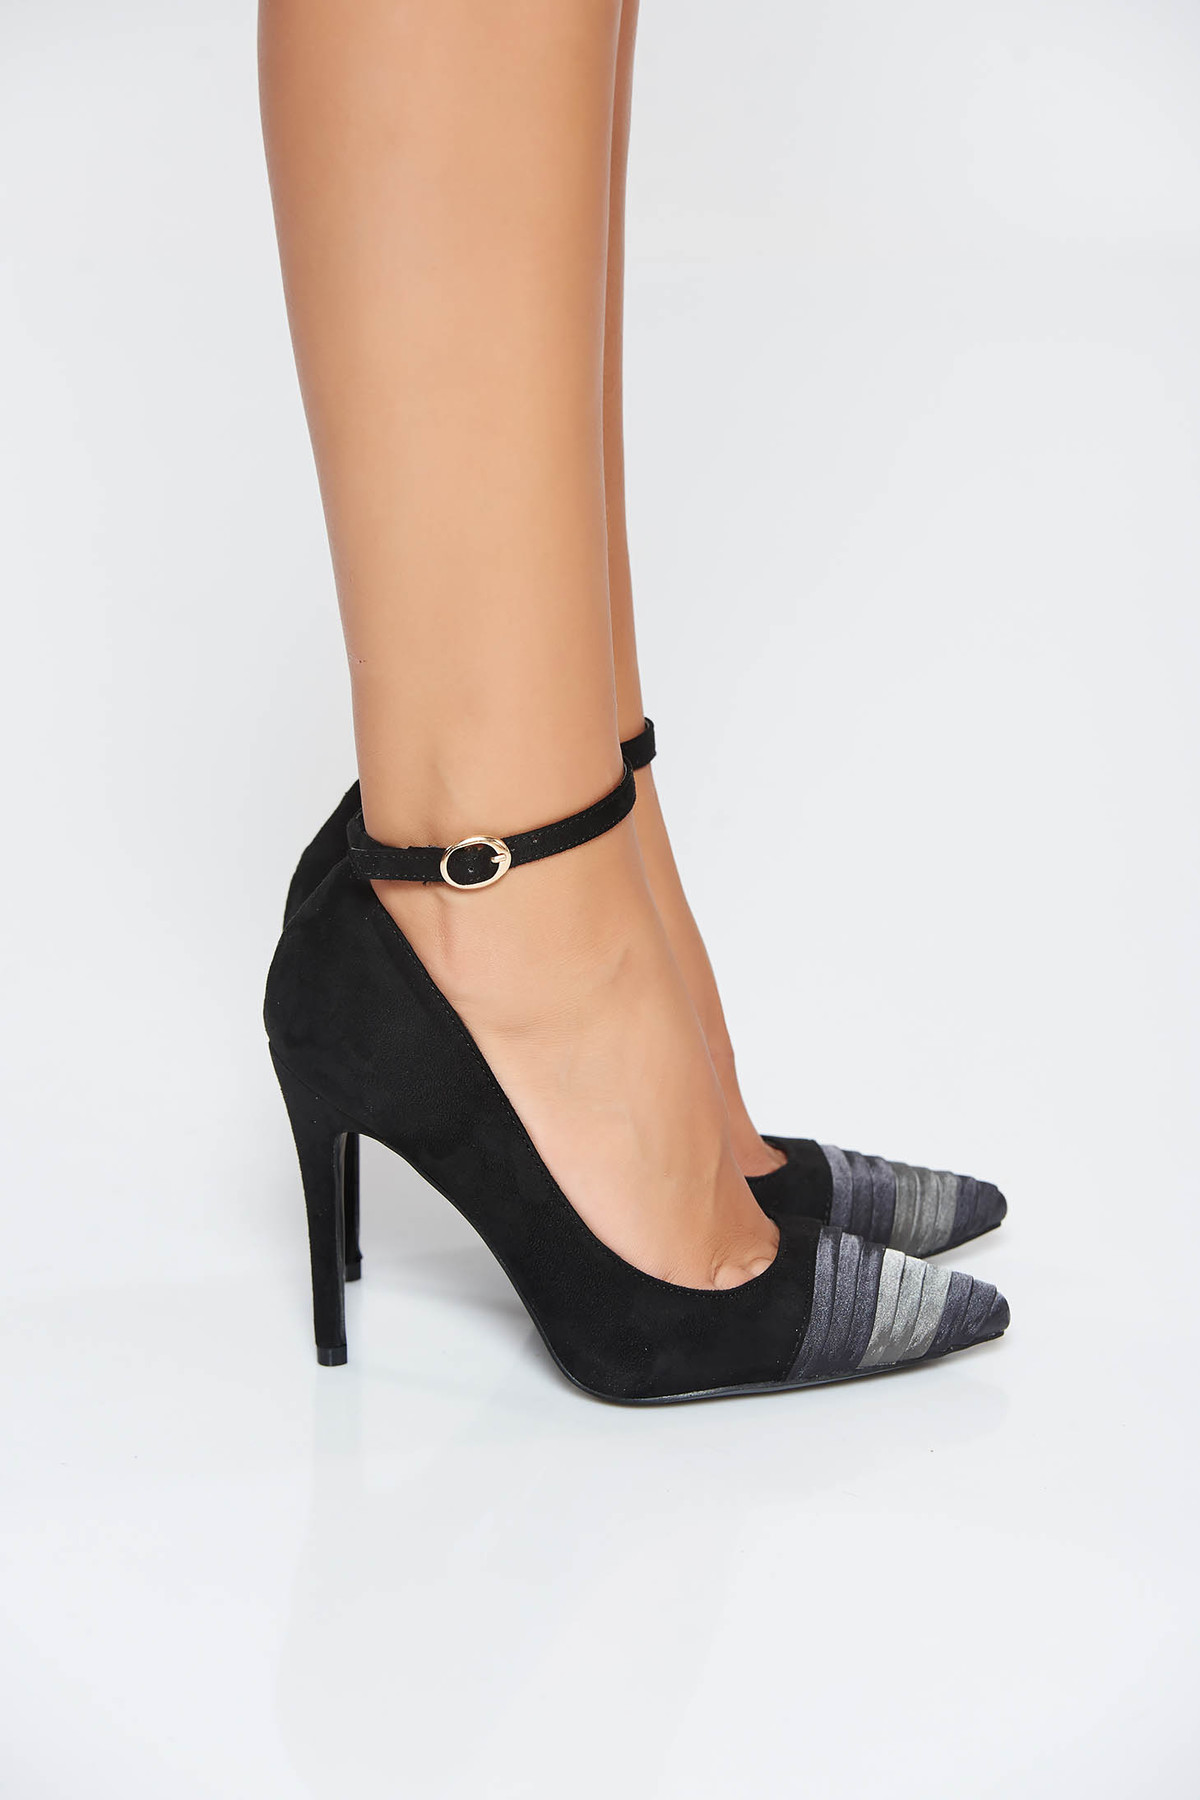 Pantofi negru elegant cu toc inalt cu varful usor ascutit